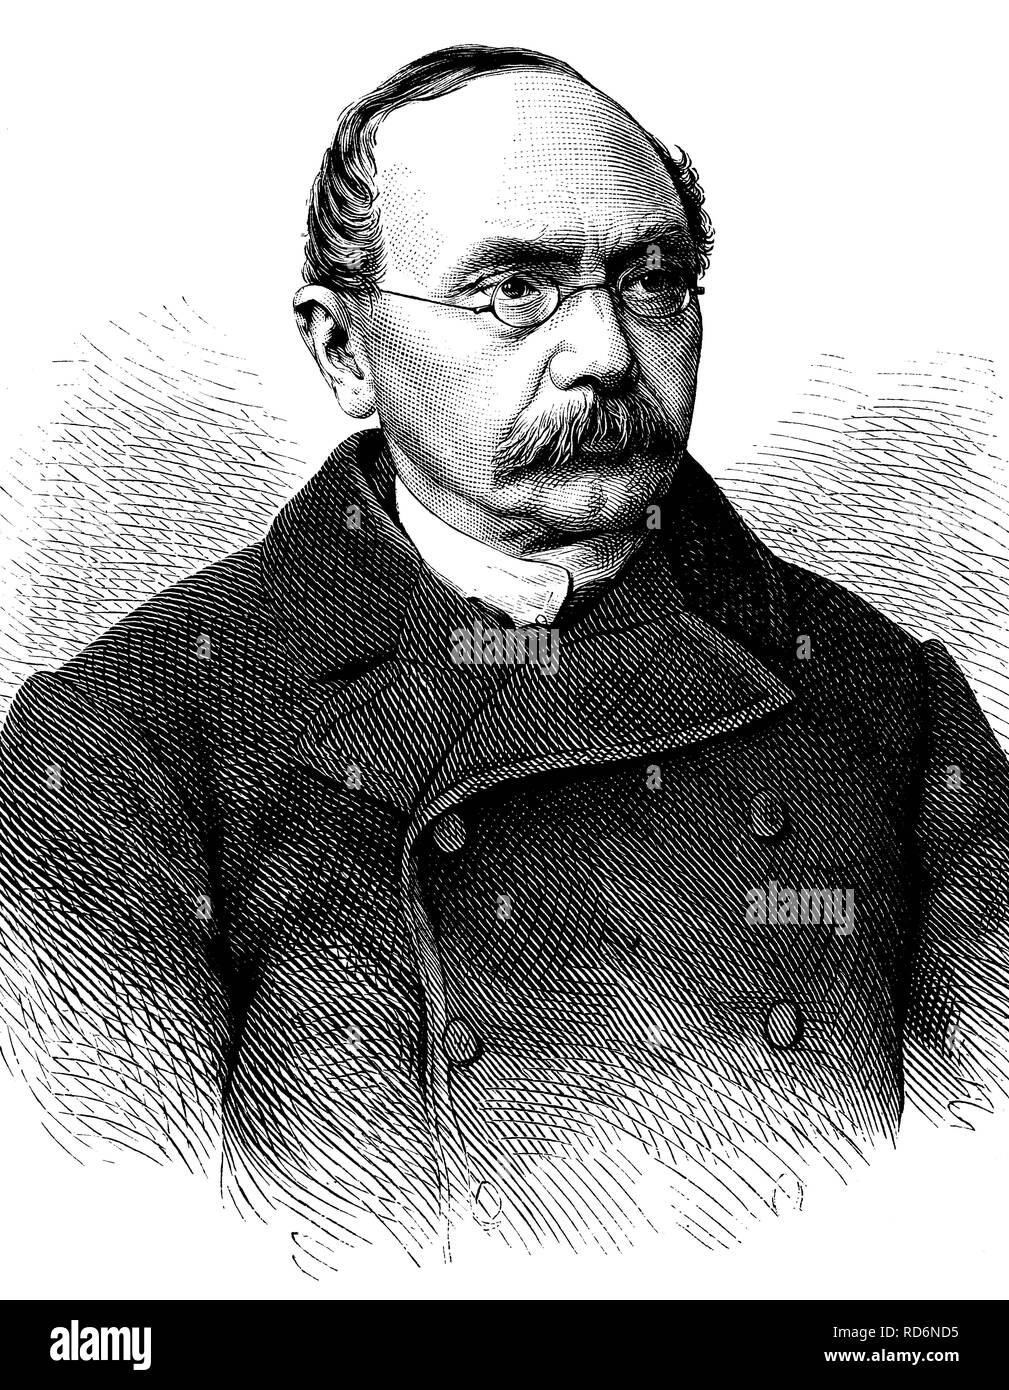 Leopold Hasner, Ritter von Artha, 1818-1891, avocat et homme politique américain, illustration historique, vers 1886 Banque D'Images